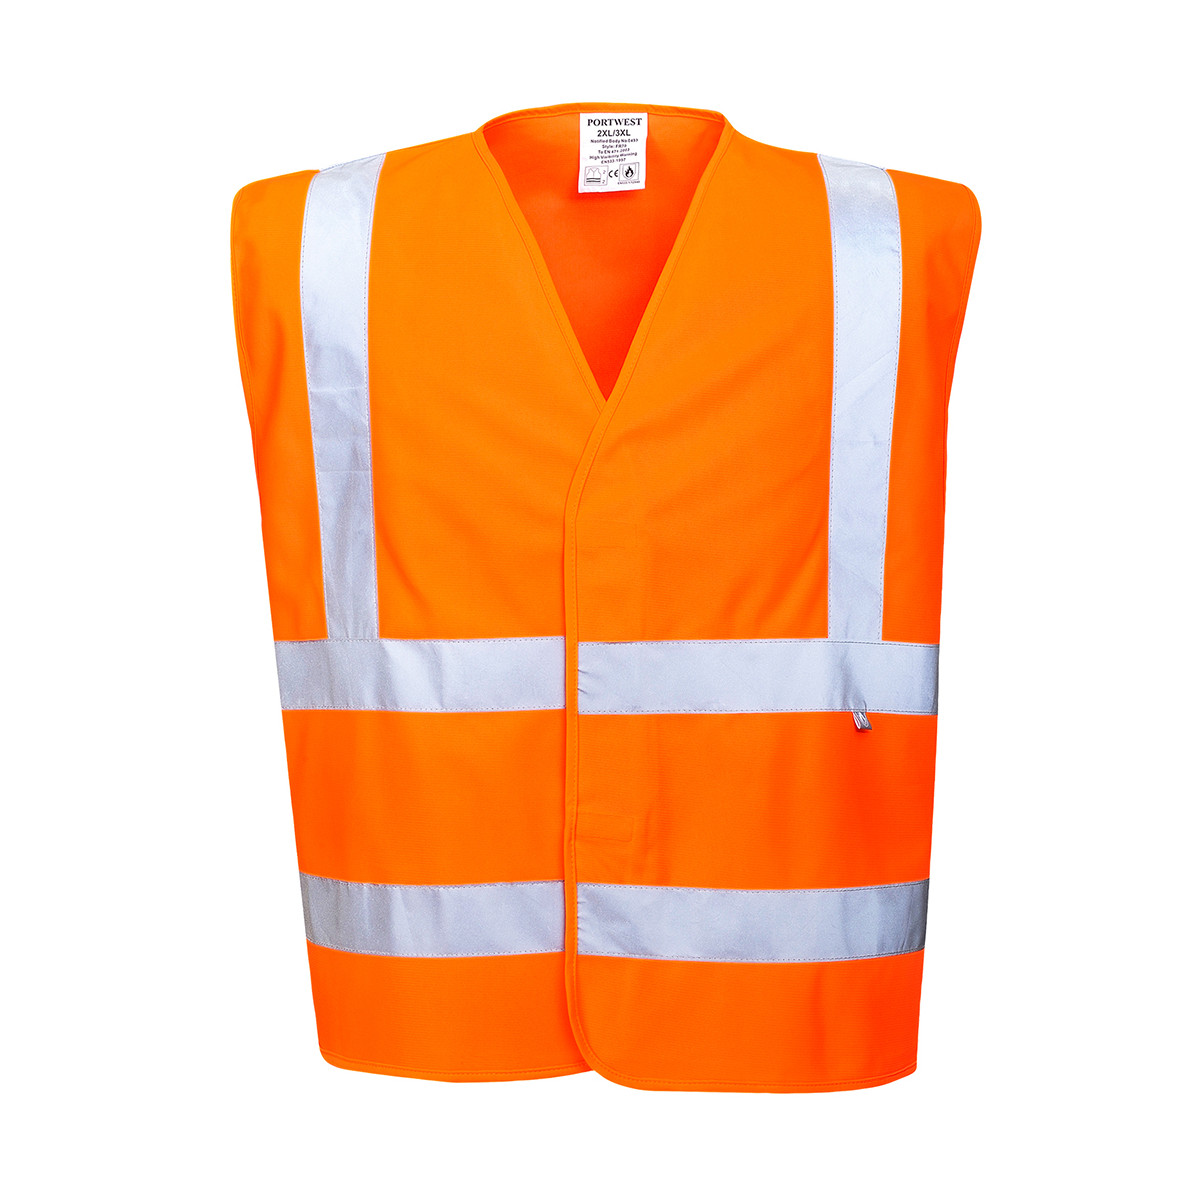 trudnopalna-odziez - Kamizelka ostrzegawcza z wykończeniem trudnopalnym kamizelka odblaskowa pomarańczowa odblaskowe pasy FR70 Portwest